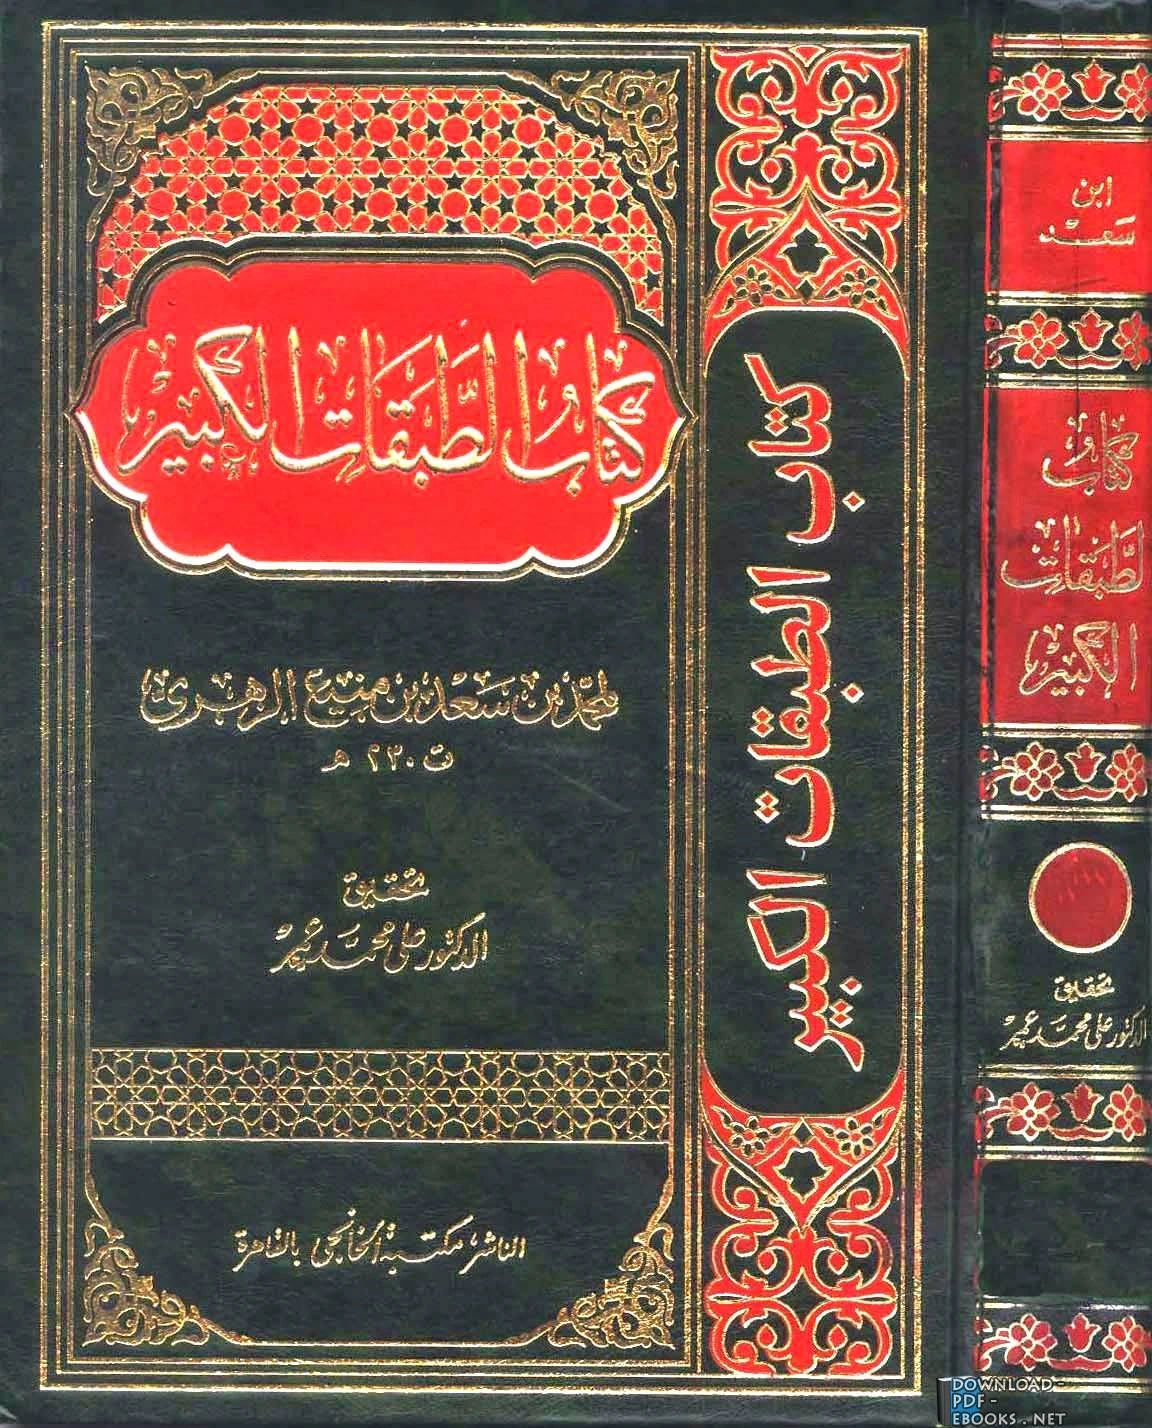 كتاب الطبقات الكبير الطبقات الكبرى طبقات ابن سعد ط الخانجي الجزء الأول السيرة النبوية لمحمد بن سعد بن مَنِيع